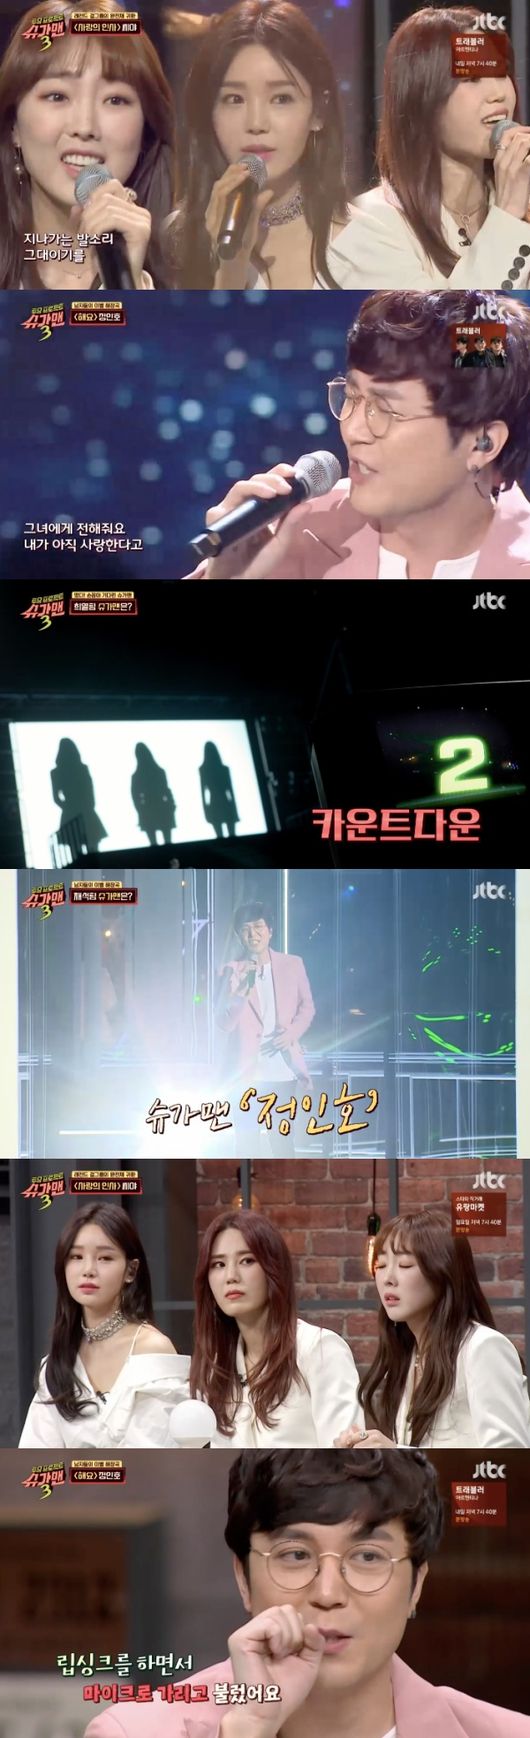 [사진=JTBC 방송화면] '슈가맨3'에 씨야와 정인호가 출연해 반가움을 더했다.